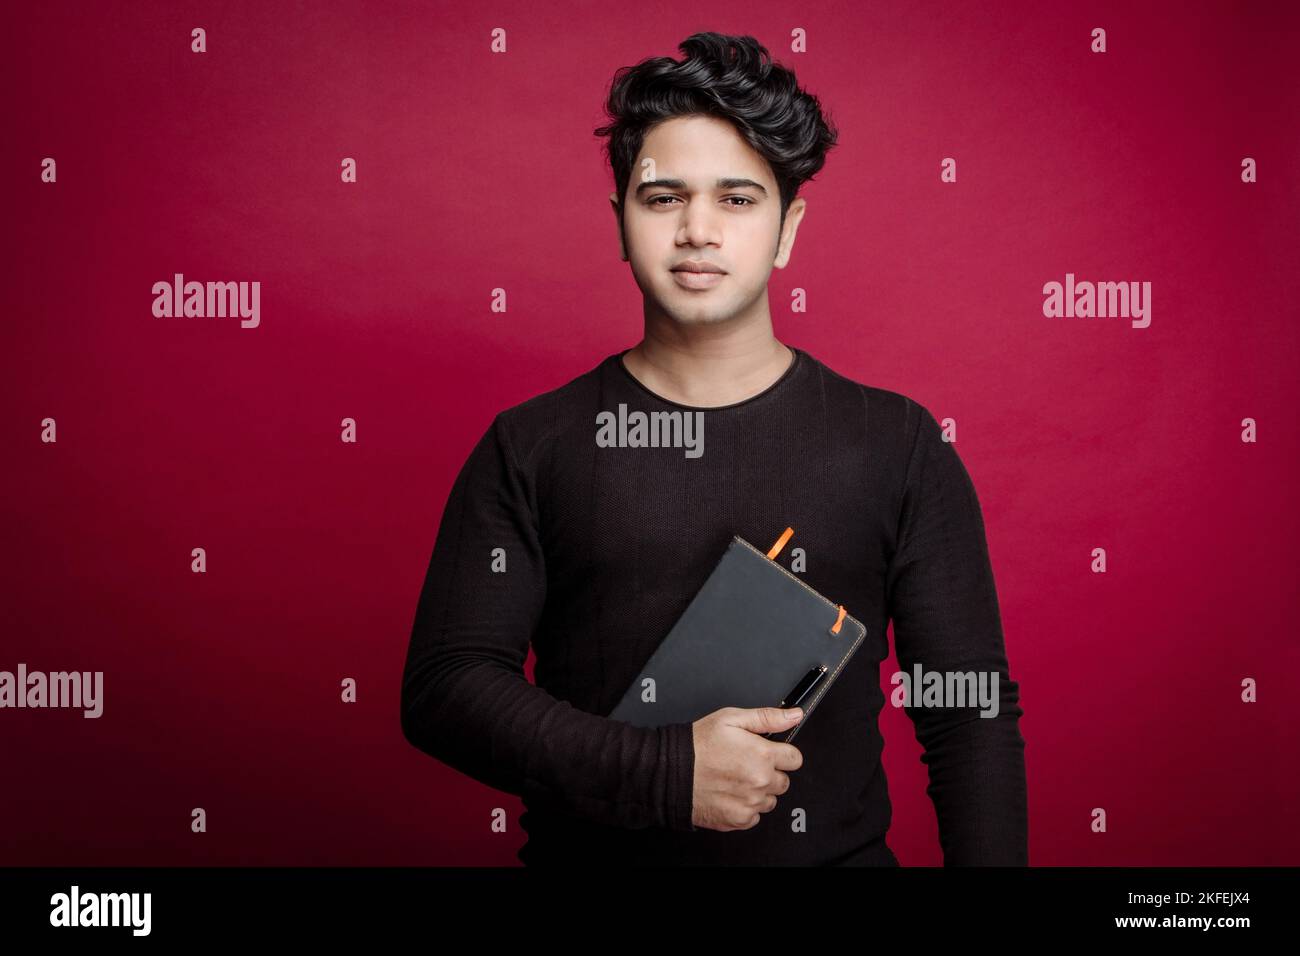 Porträt eines selbstbewussten jungen indischen Geschäftsmannes in einem eleganten, zwanglosen Tagebuch, der vor rotem Hintergrund die Kamera anschaut Stockfoto